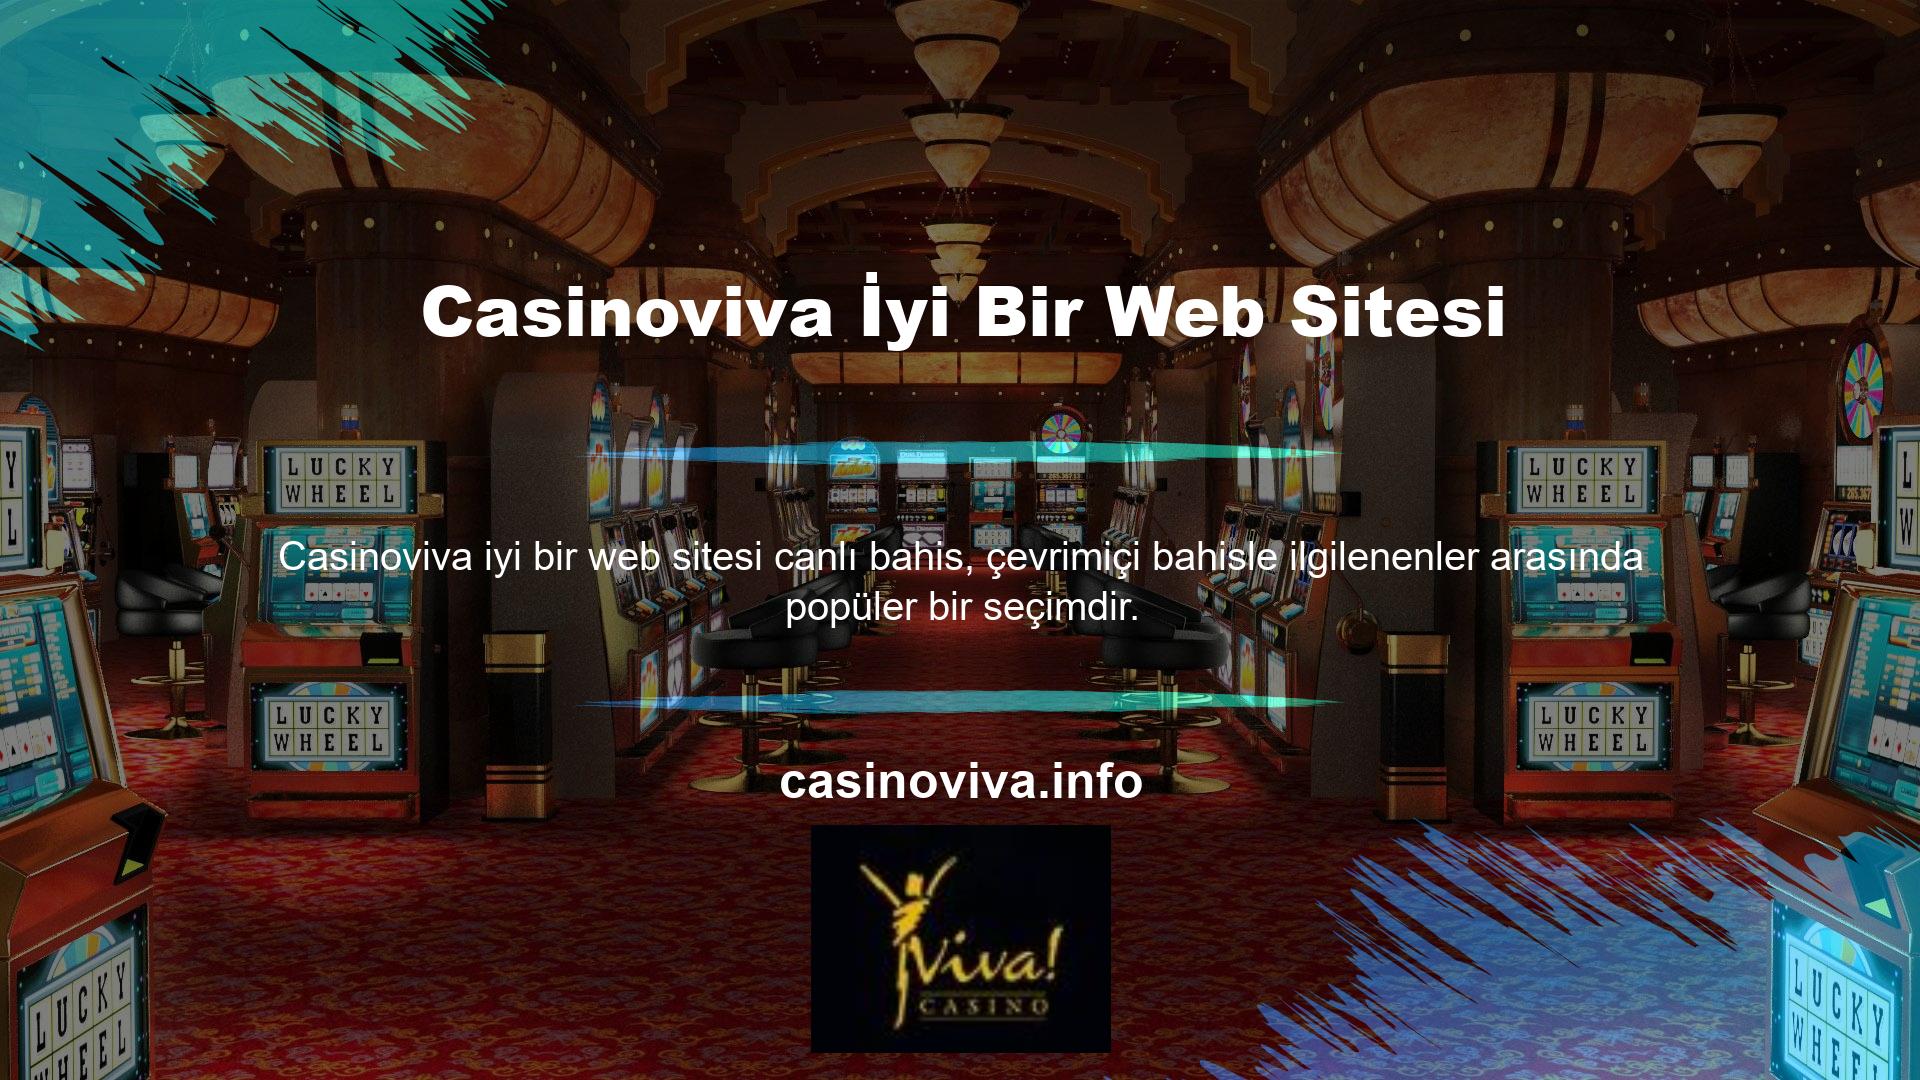 Casinoviva spor bahisleri ve casino oyunlarındaki popülaritesi üst düzey hizmetlerinden kaynaklanmaktadır